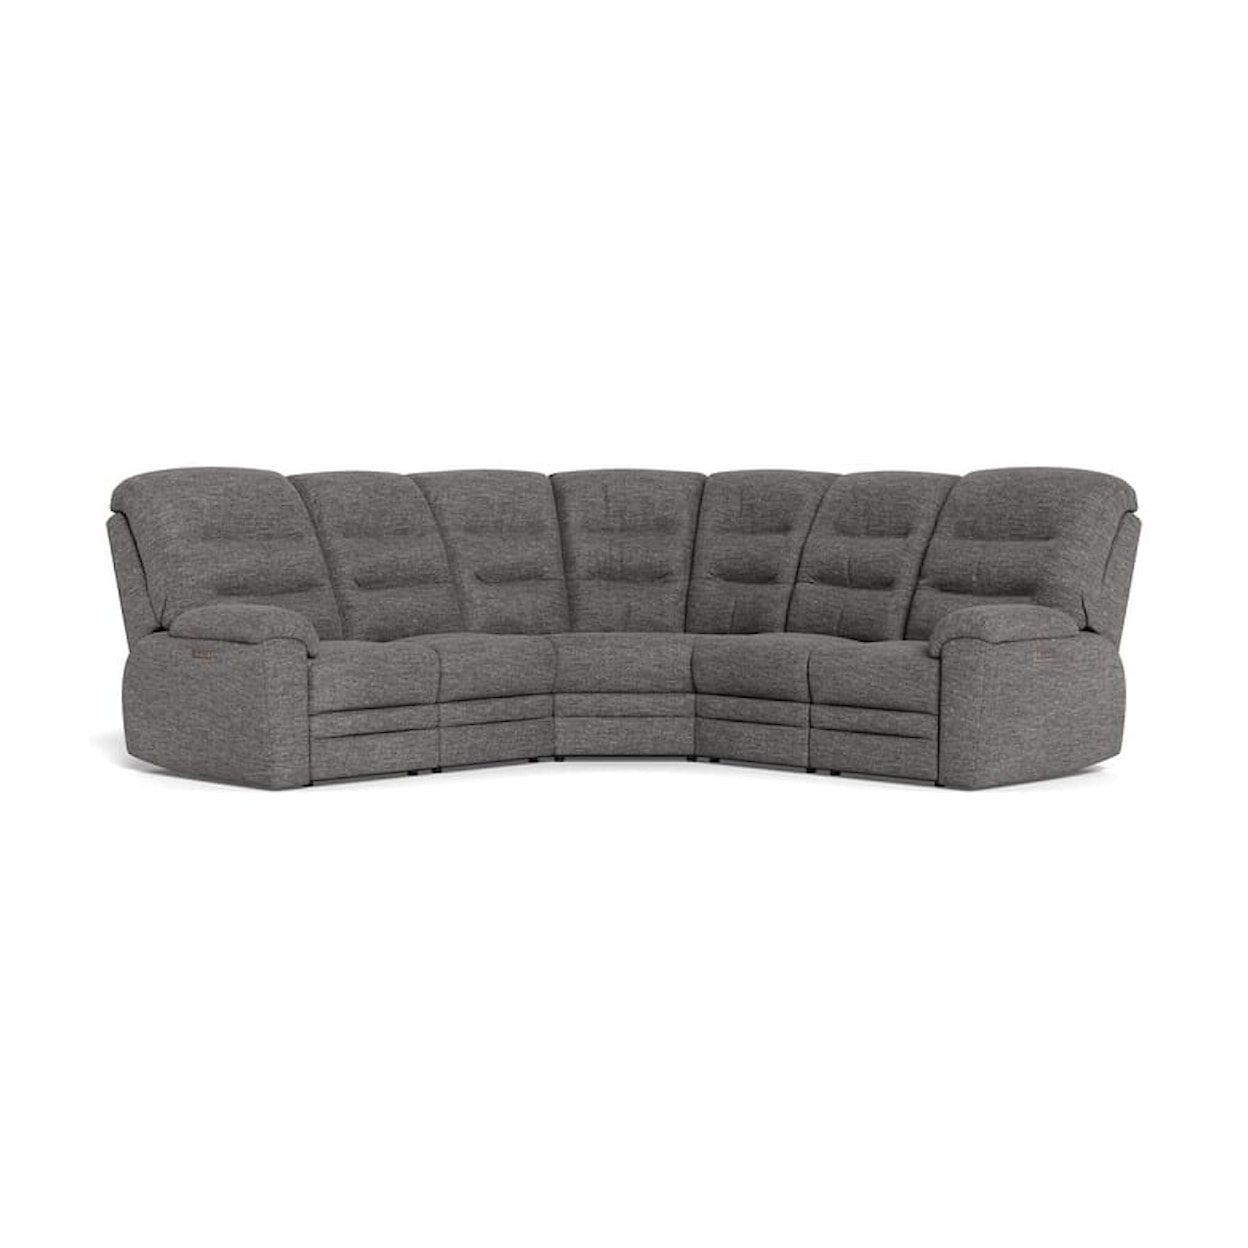 Palliser Keiran Keiran 4-Seat Sectional Sofa